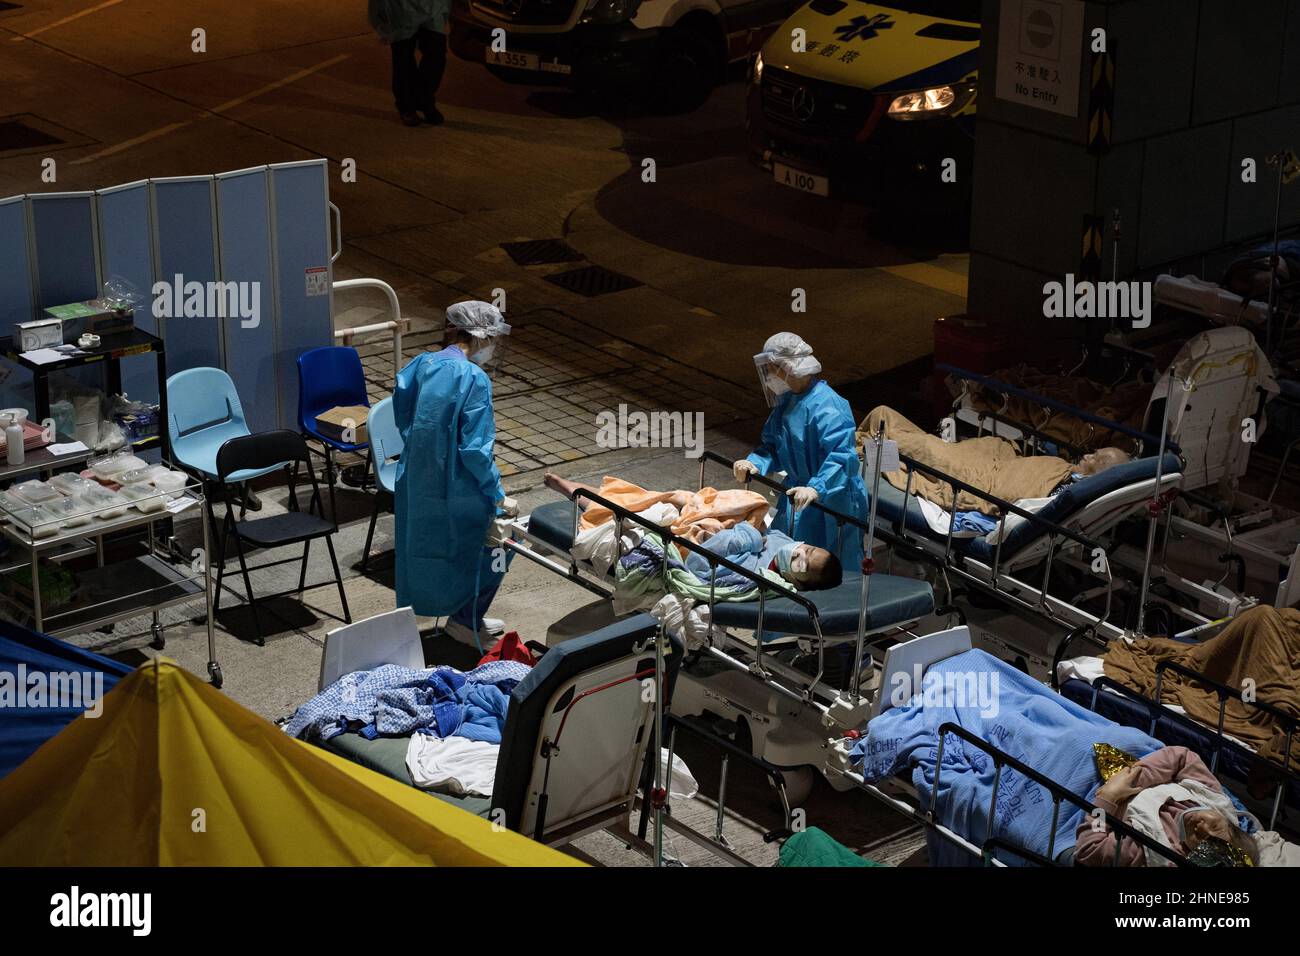 Gesundheitsfachkräfte, die persönliche Schutzanzüge (PSA) tragen, nehmen an covid-19 Patienten auf ihren Betten Teil. Hongkong kämpft darum, den Ausbruch von Covid-19 einzudämmen, wobei die meisten Krankenhäuser über ihre Kapazitäten verfügen. Patienten auf Krankenhausbetten standen vor Den A&E-Abteilungen des medizinischen Zentrums der Caritas und warteten darauf, ins Krankenhaus zu kommen. (Foto von Dominic Chiu / SOPA Images/Sipa USA) Stockfoto